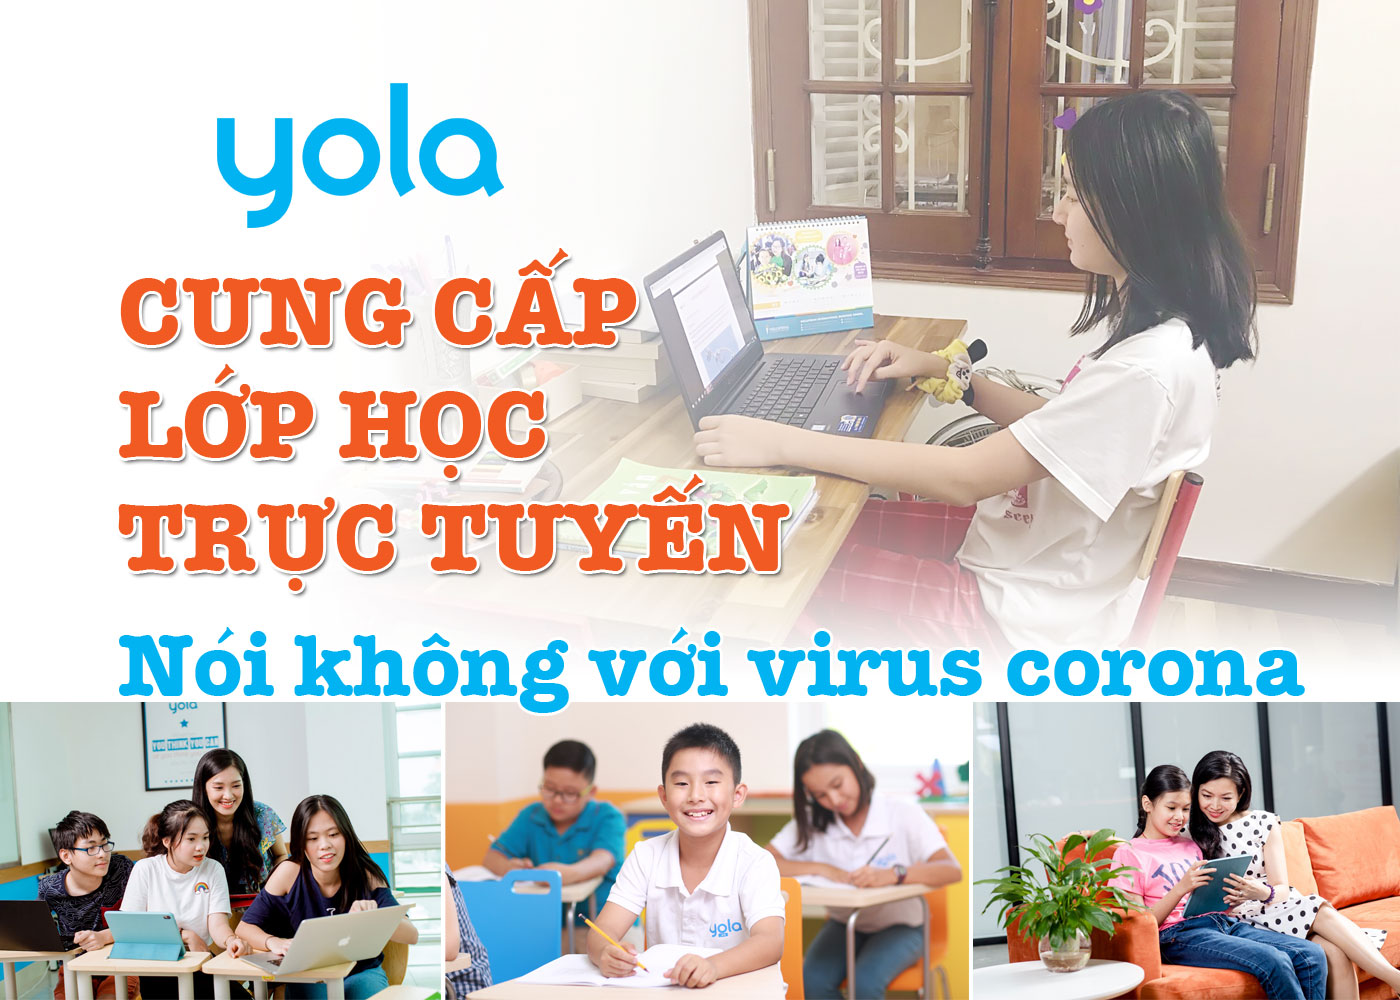 YOLA cung cấp lớp học trực tuyến - Nói không với virus corona - Ảnh 1